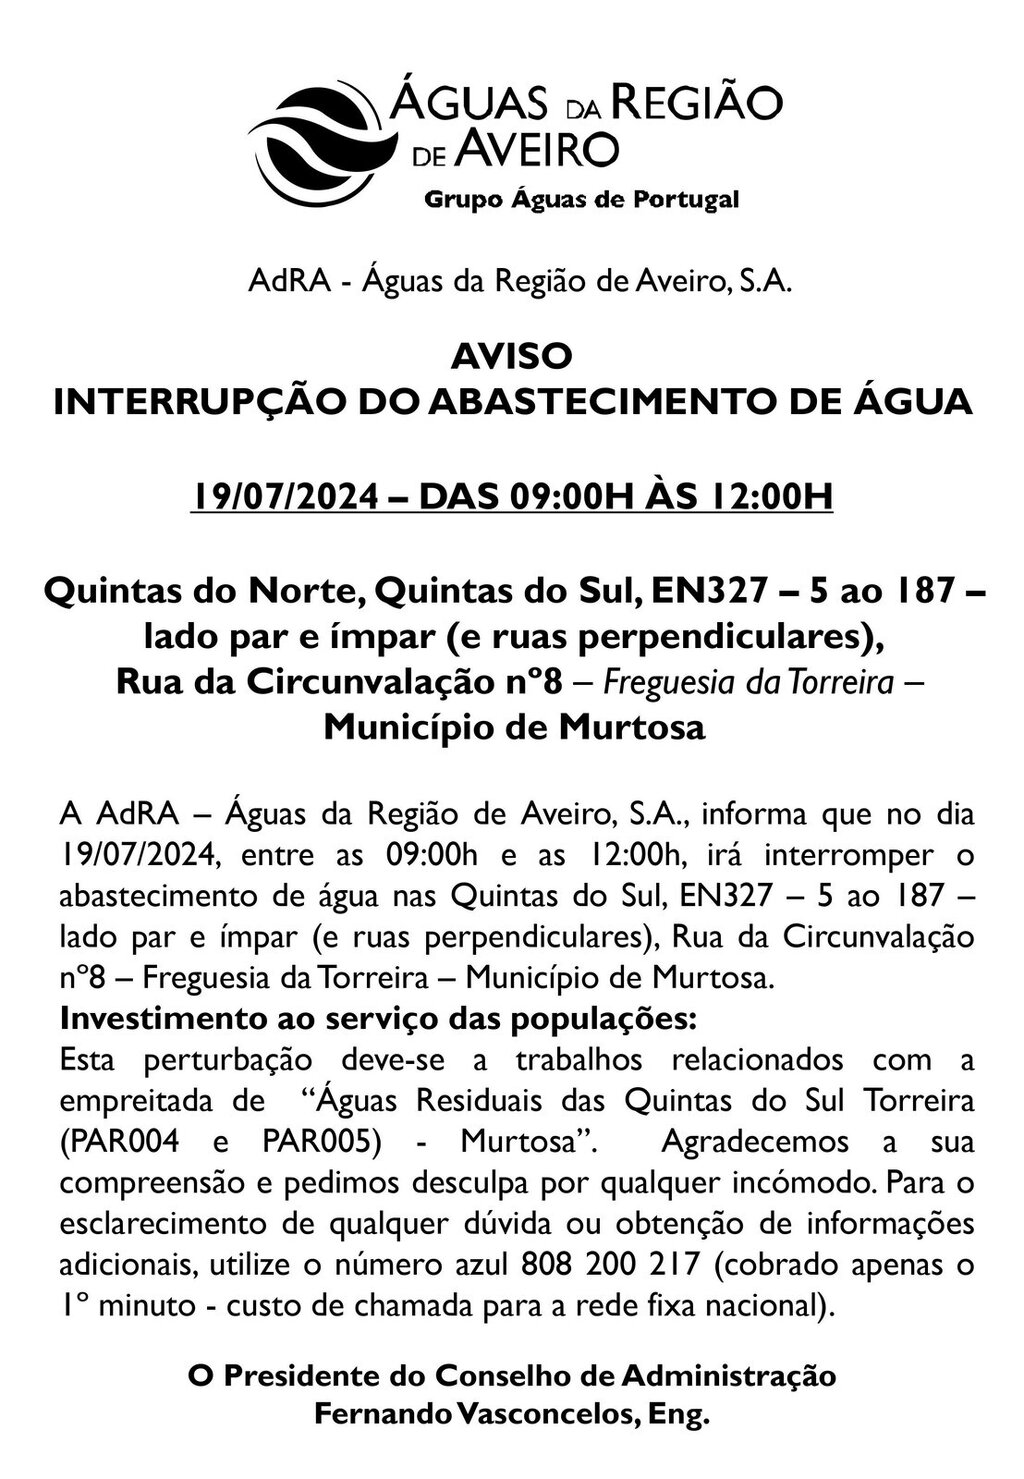 AVISO - INTERRUPÇÃO DO ABASTECIMENTO DE ÁGUA - 19/07/2014